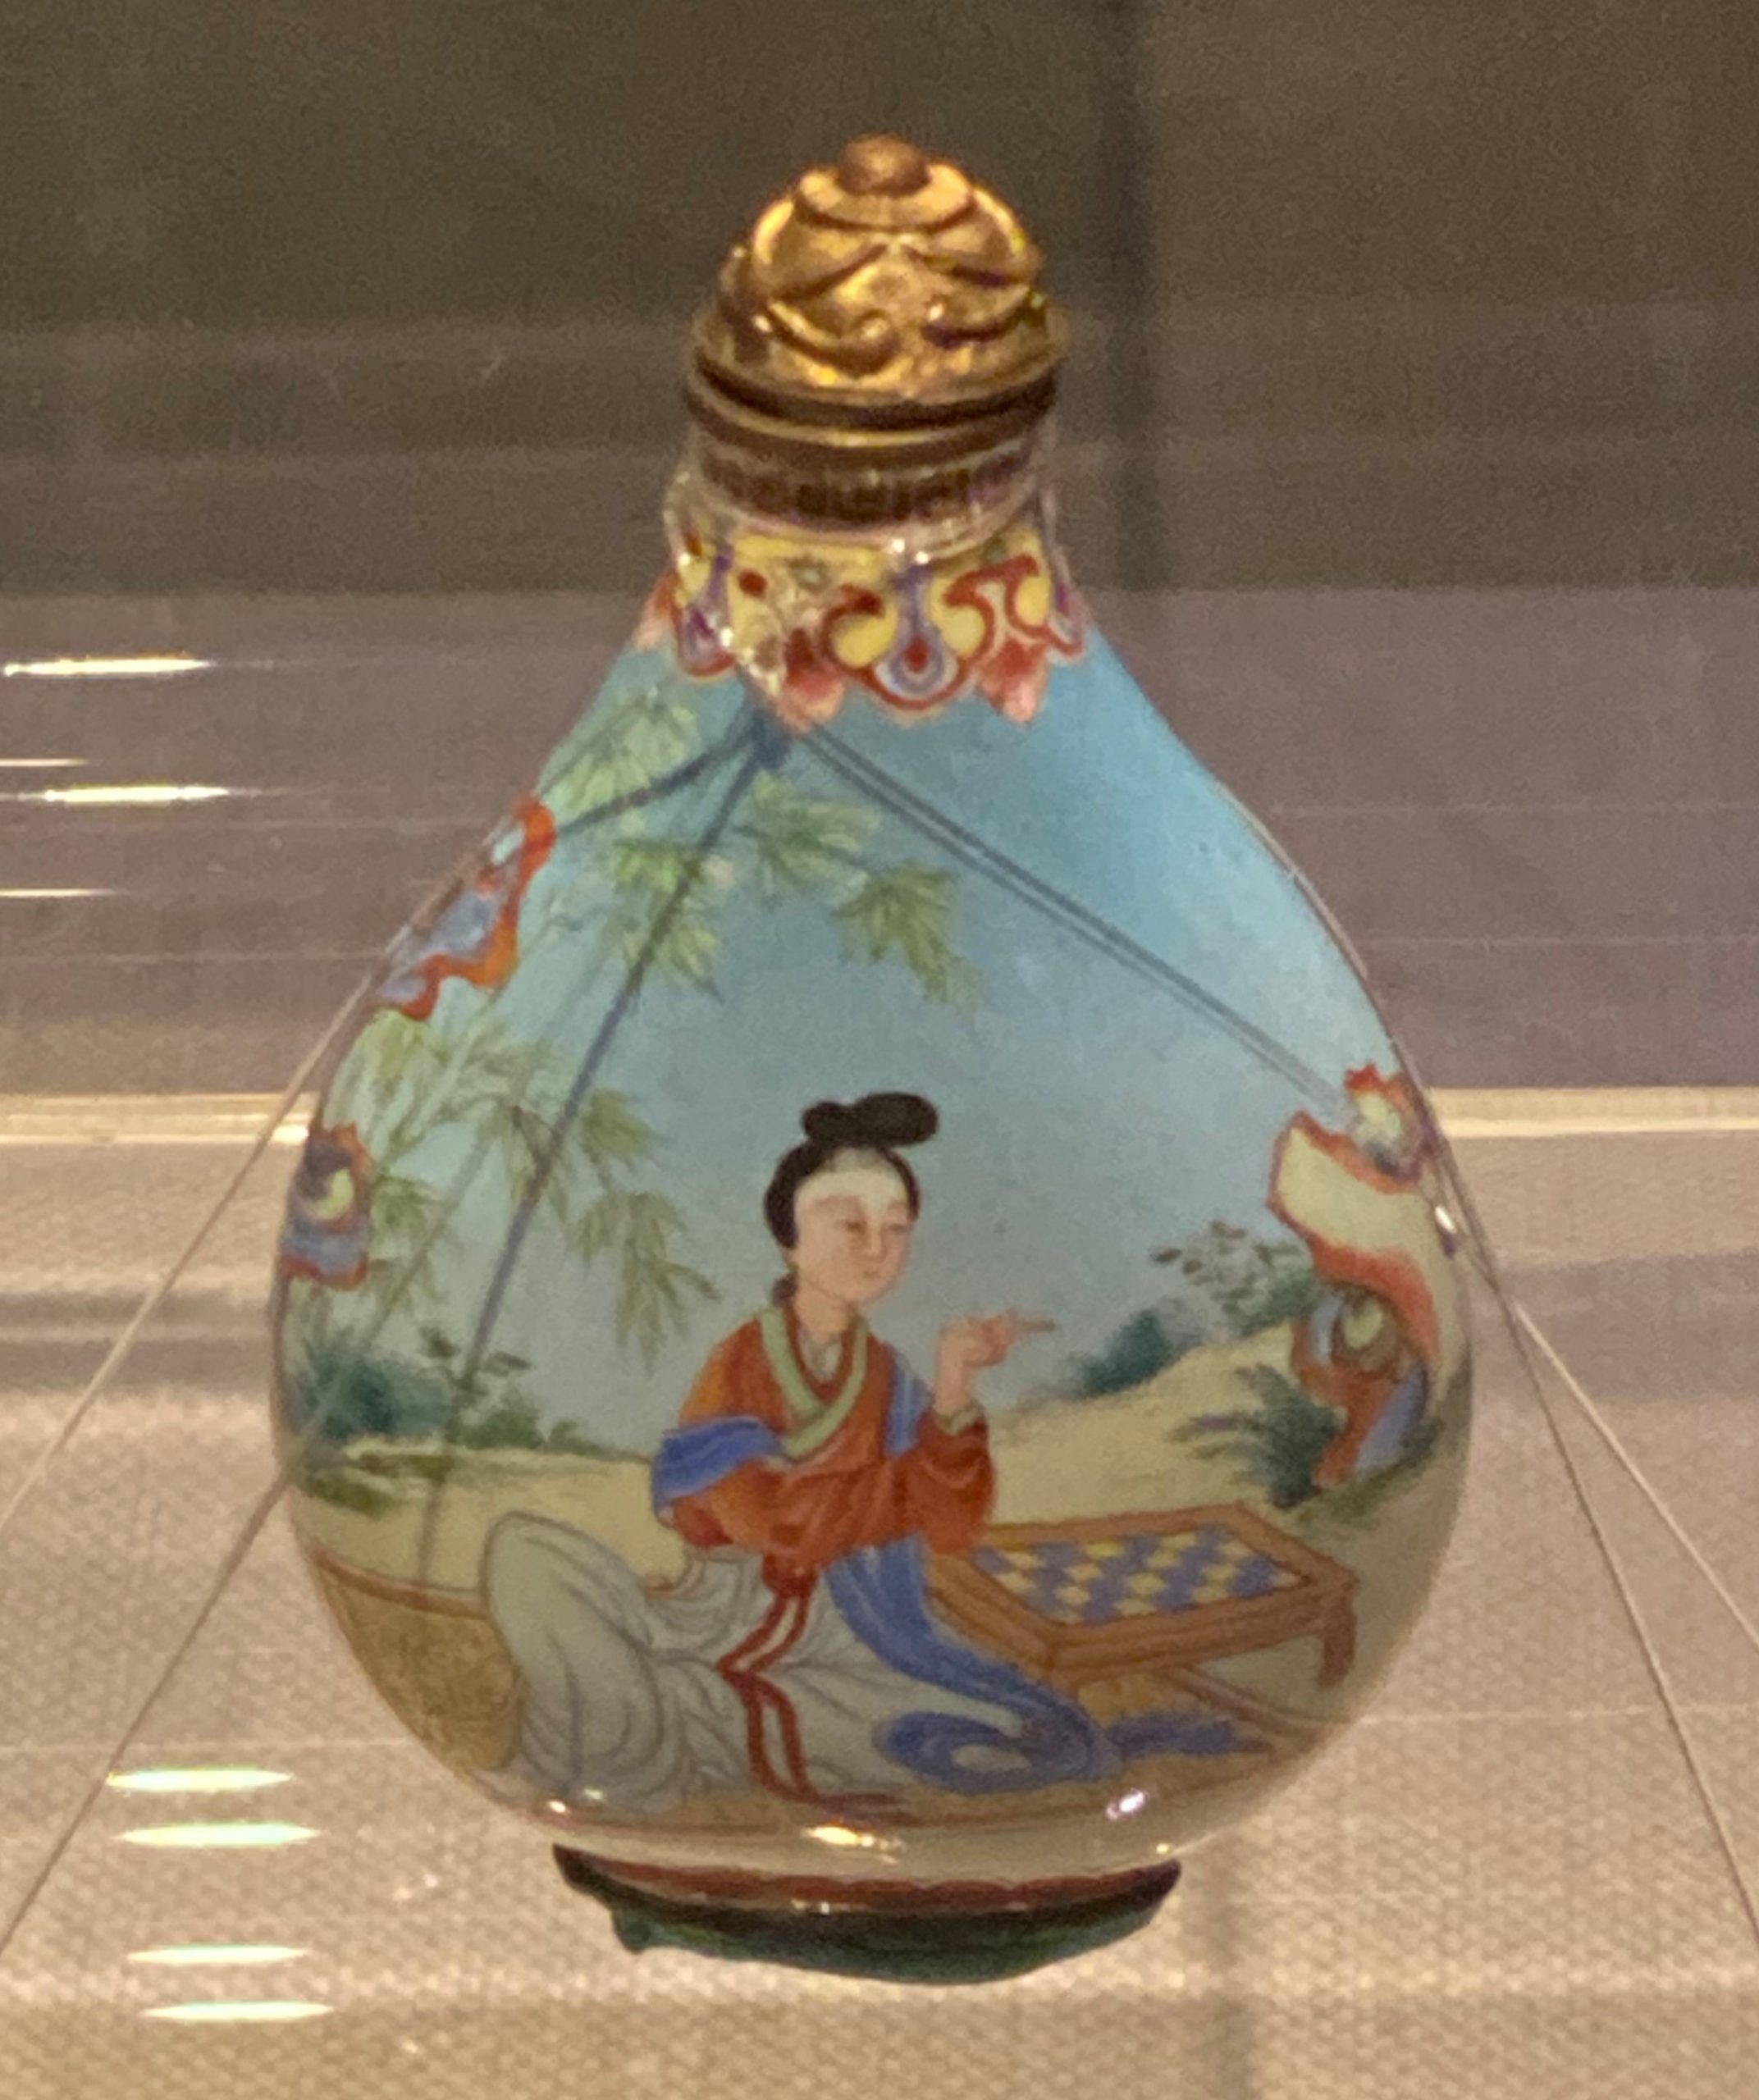 銅胎琺瑯釉鼻煙瓶-清時代-工藝美術館-四川博物館-成都